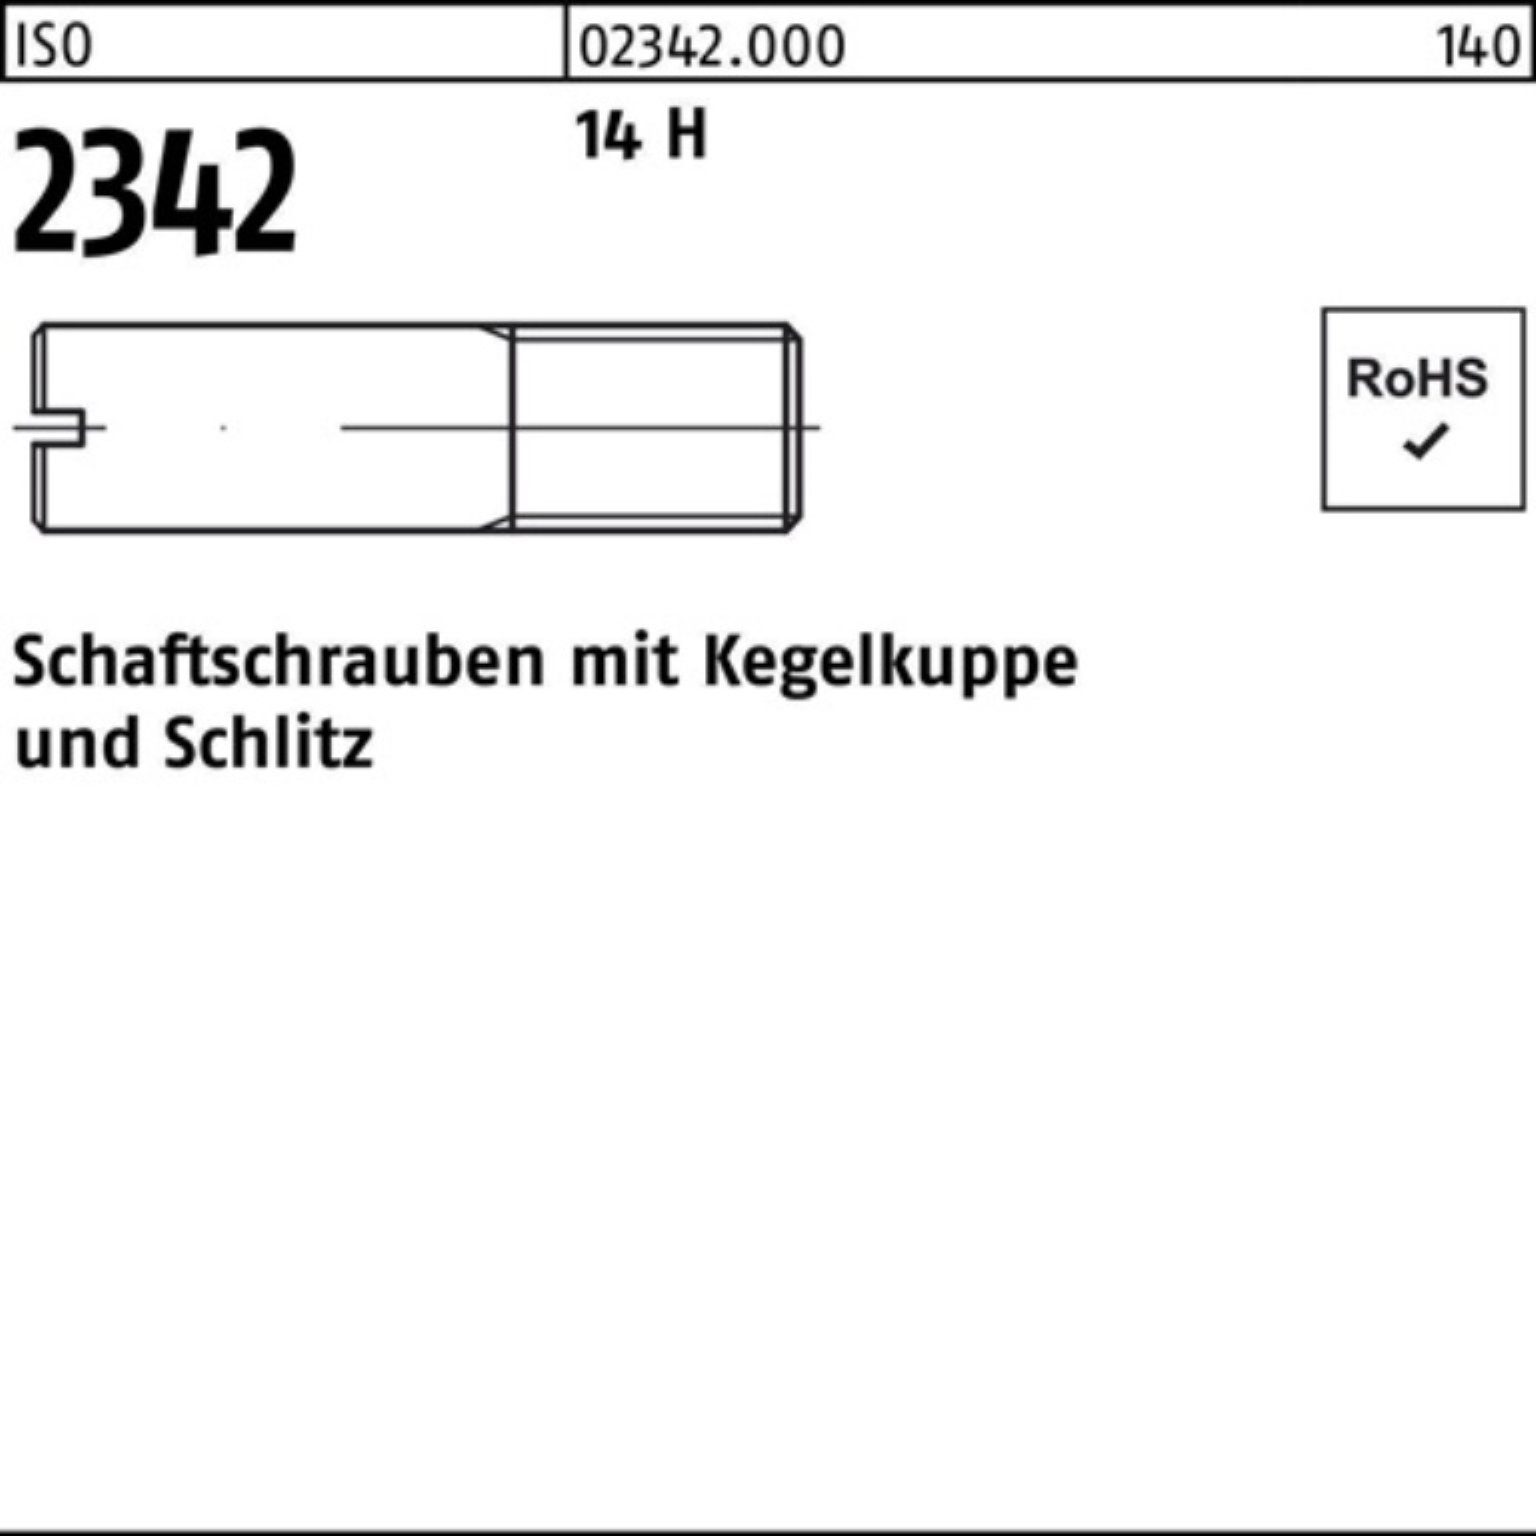 Reyher Schraube 100er Pack Schaftschraube ISO 2342 Kegelkuppe/Schlitz M5x 40 14 H 100 | Schrauben